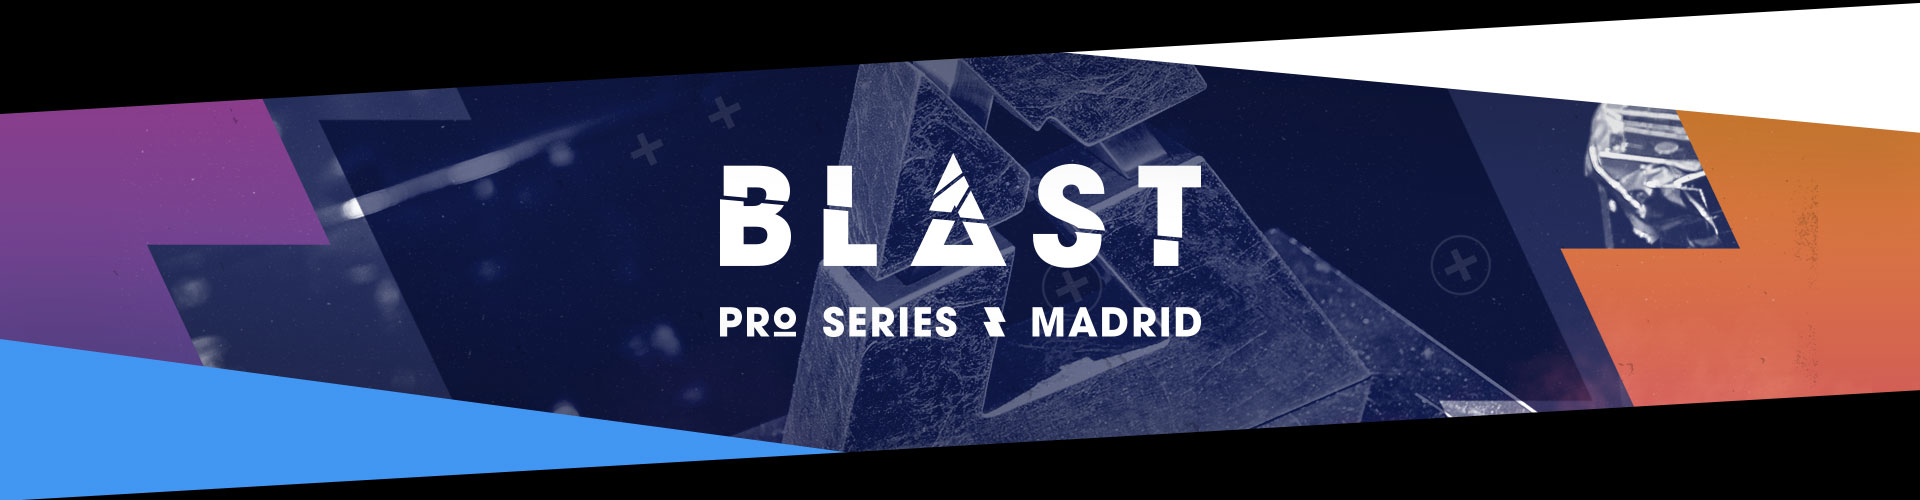 Madrid stod för värdskapet när BLAST Pro Series kom till Europa